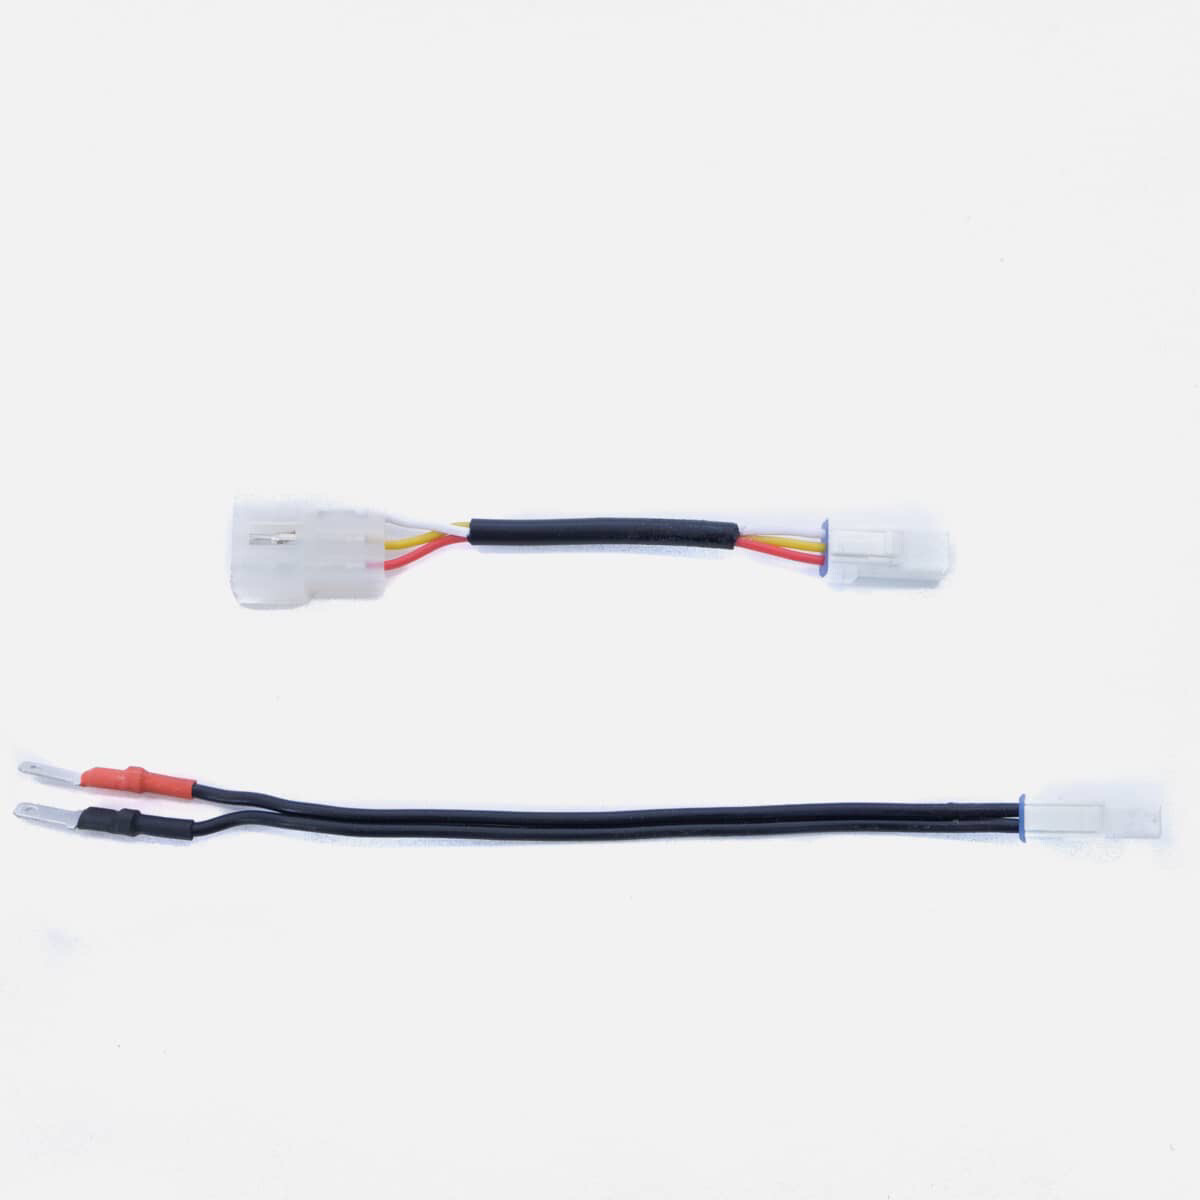 Cable électrique adapteur Gocycle adaptateur cable set